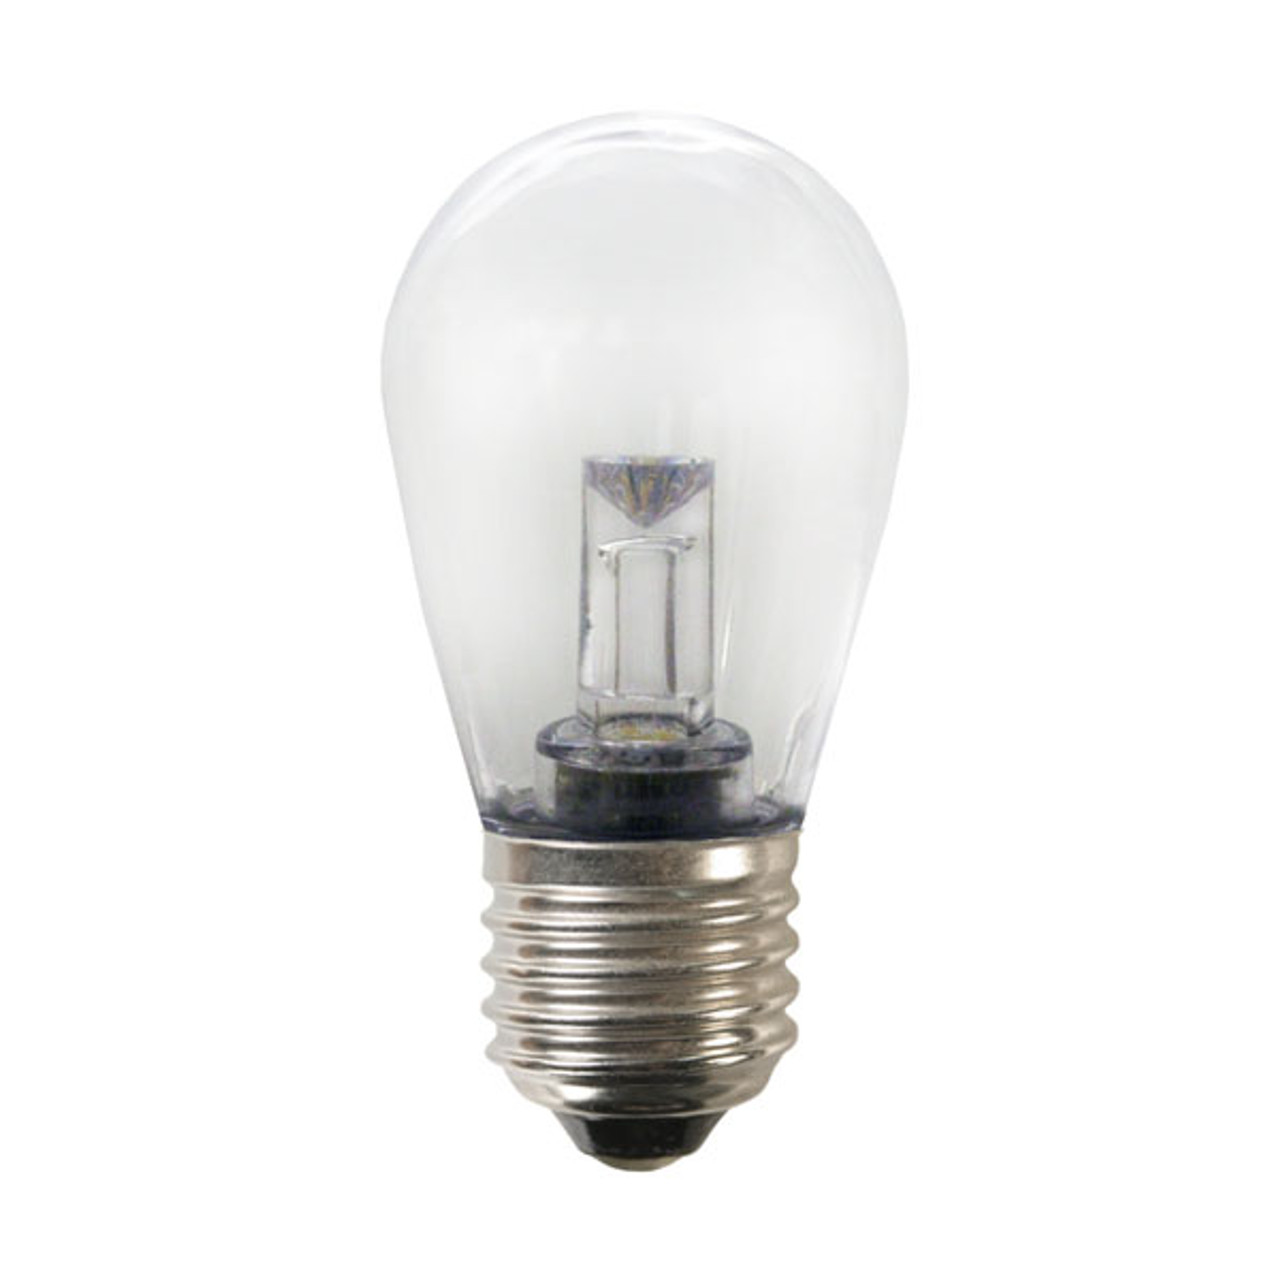 14+ Led Street Light Bulbs